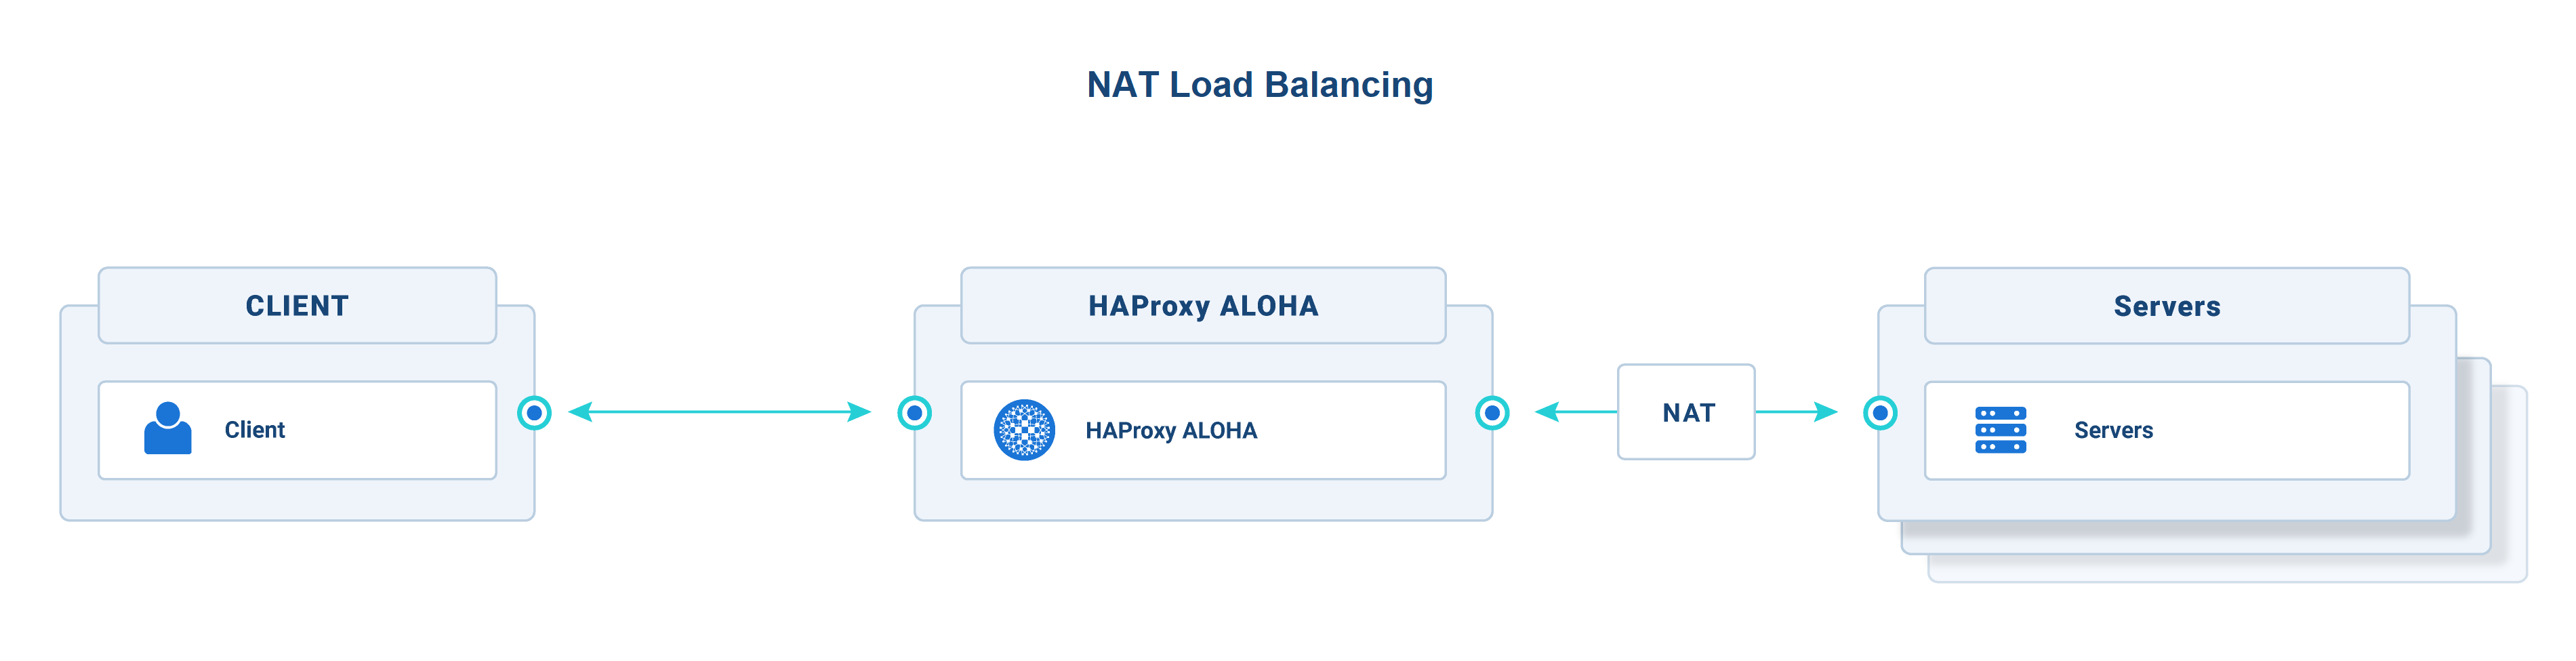 NAT load balancing